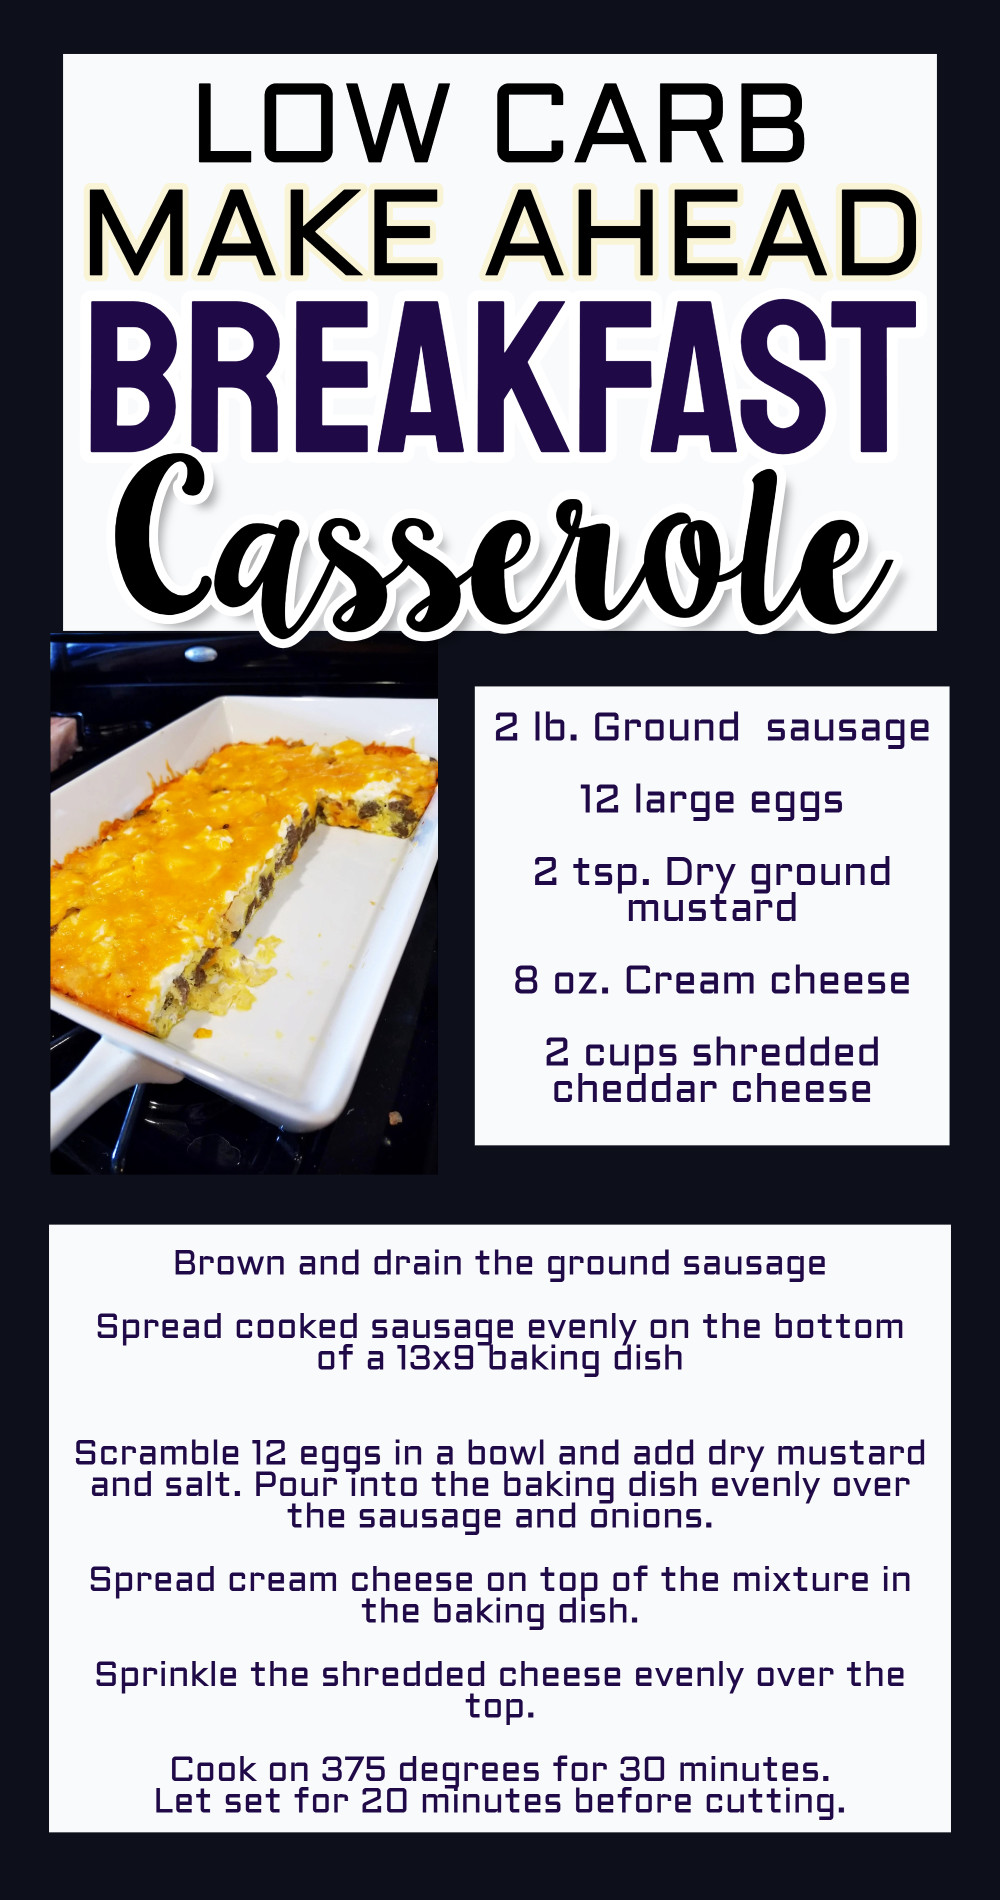 Low carb make ahead breakfast casserole recipe